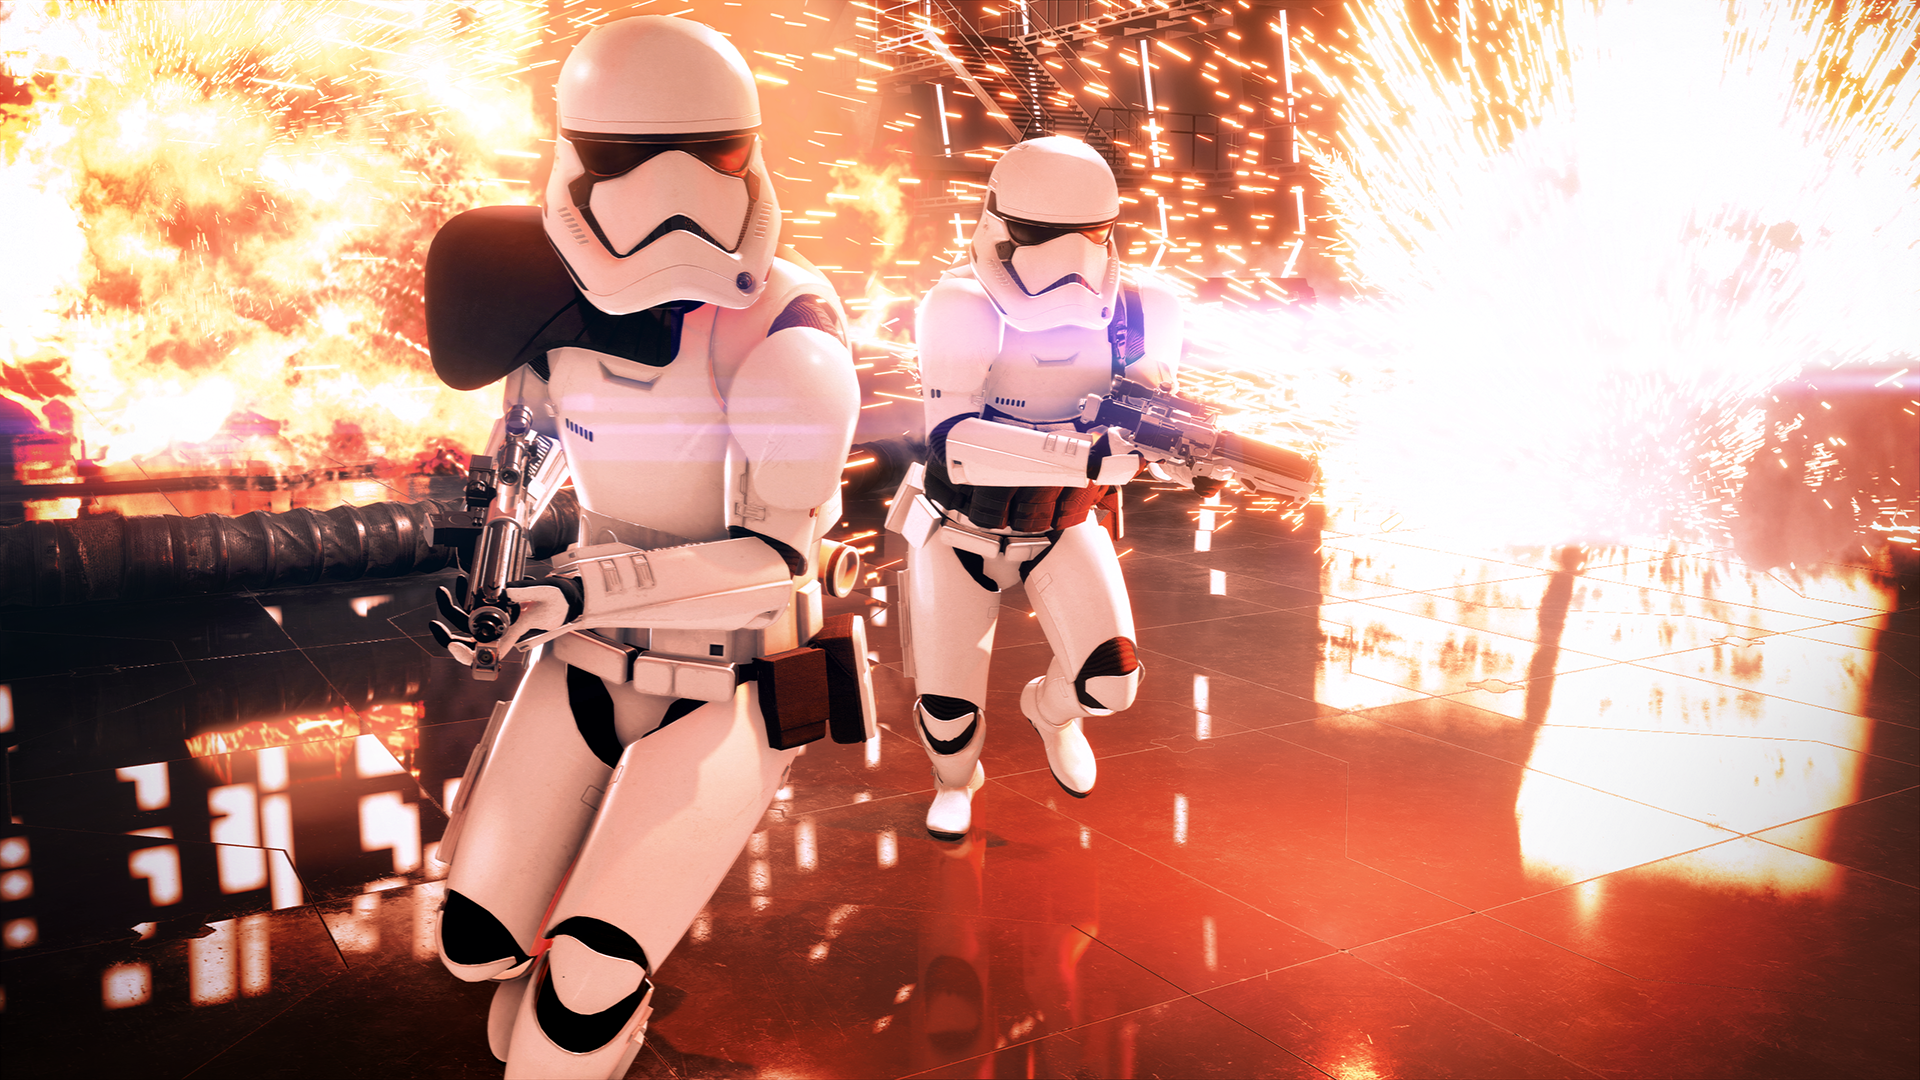 Star Wars Battlefront II får tilbake mikrotransaksjoner - Gamer.no